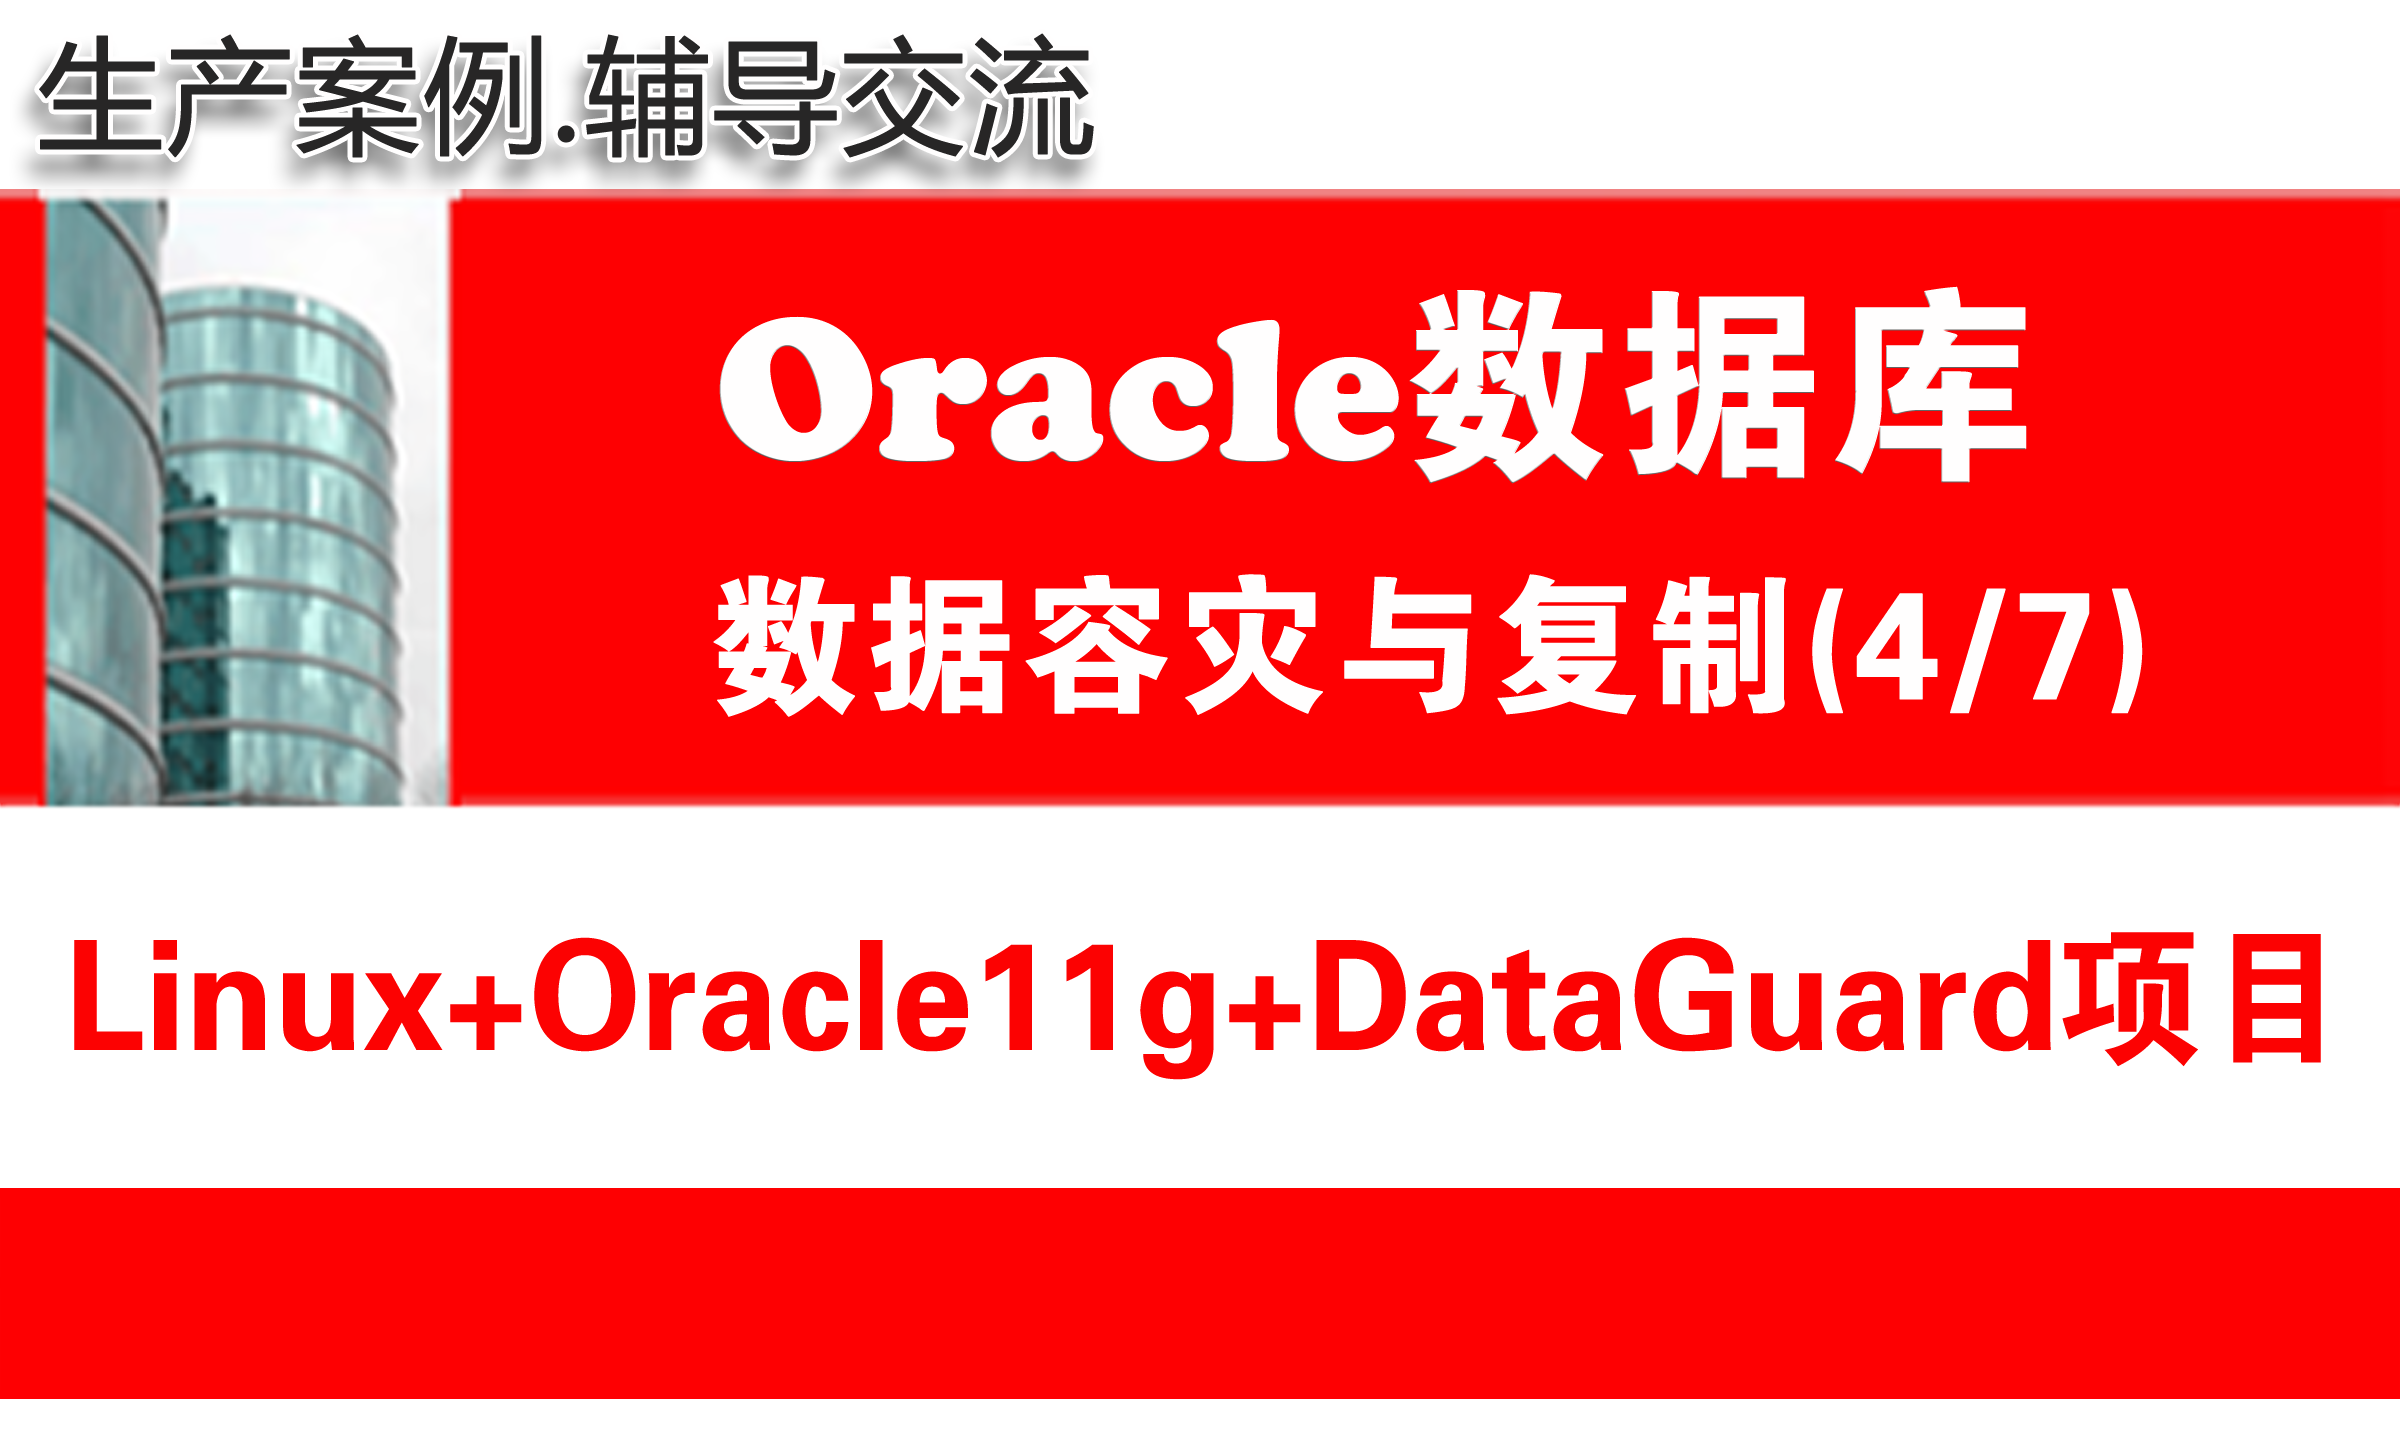 生产环境Linux+Oracle11g+DataGuard安装配置维护_Oracle数据库容灾项目4